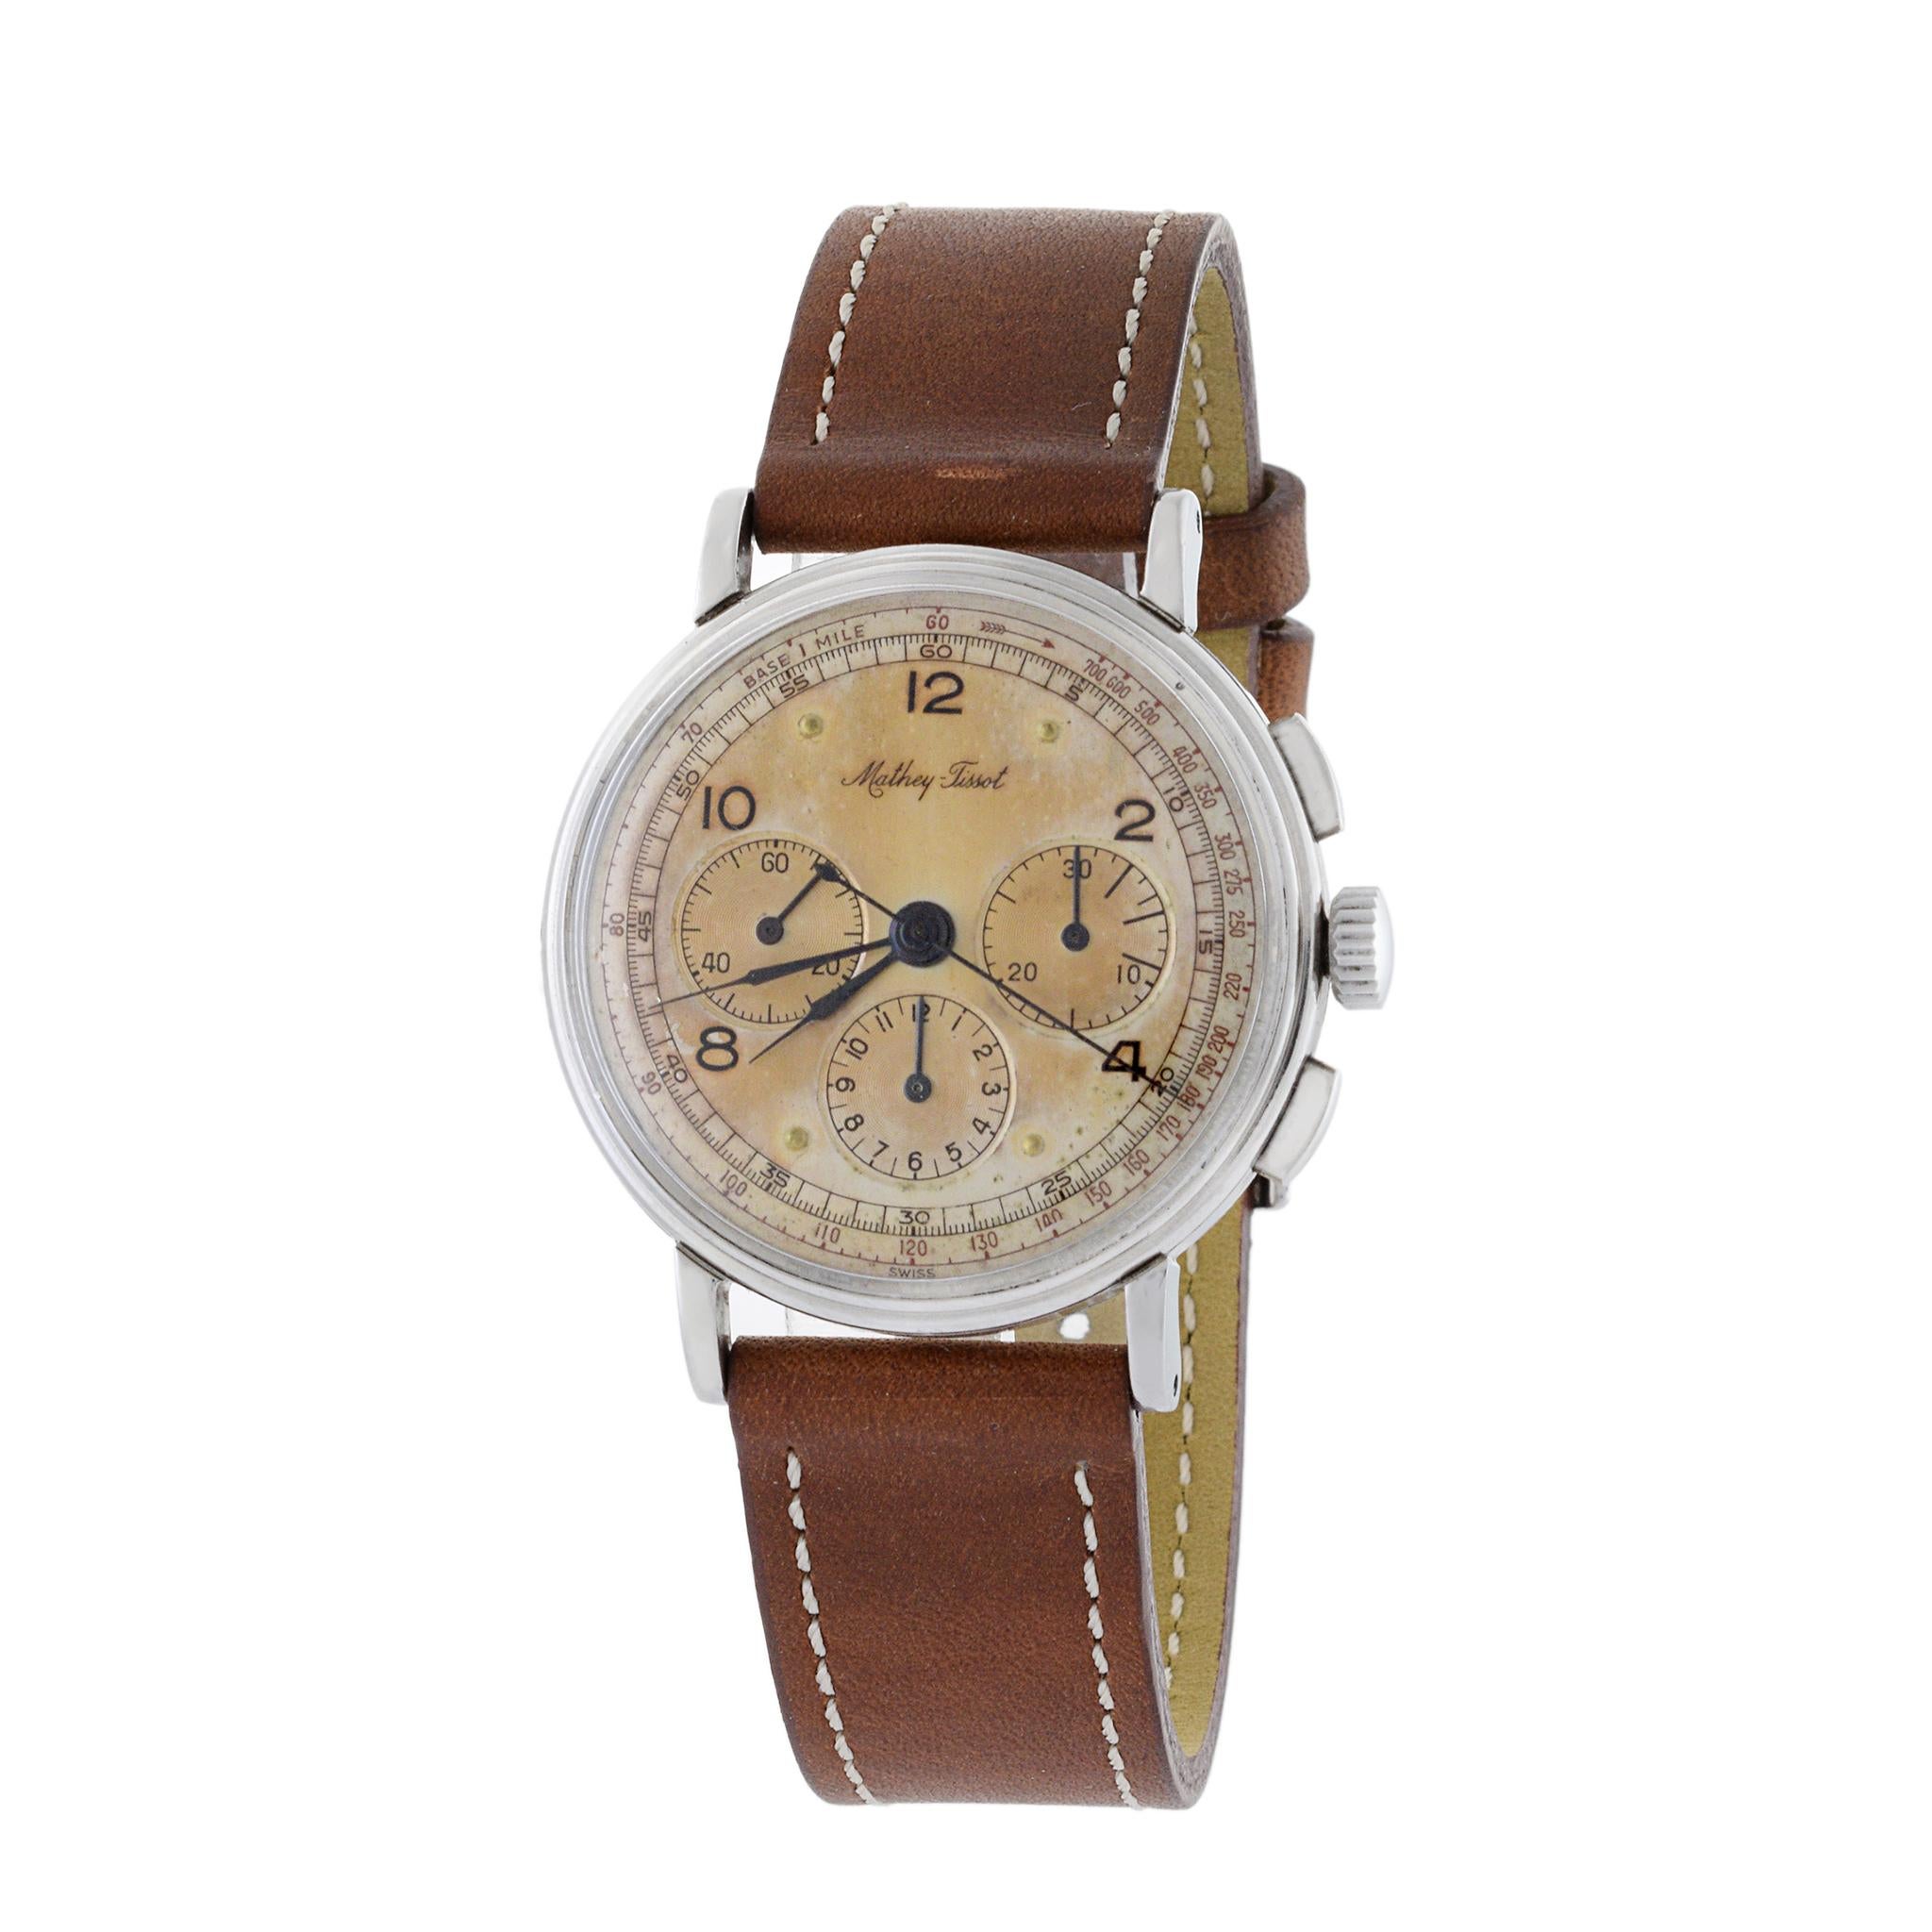 Voici un magnifique chronographe TISSOT en acier inoxydable de 1948, entièrement d'origine. Le boîtier de la montre mesure 35 mm de diamètre et n'est pas poli.

La caractéristique la plus importante de cette montre est peut-être son mouvement